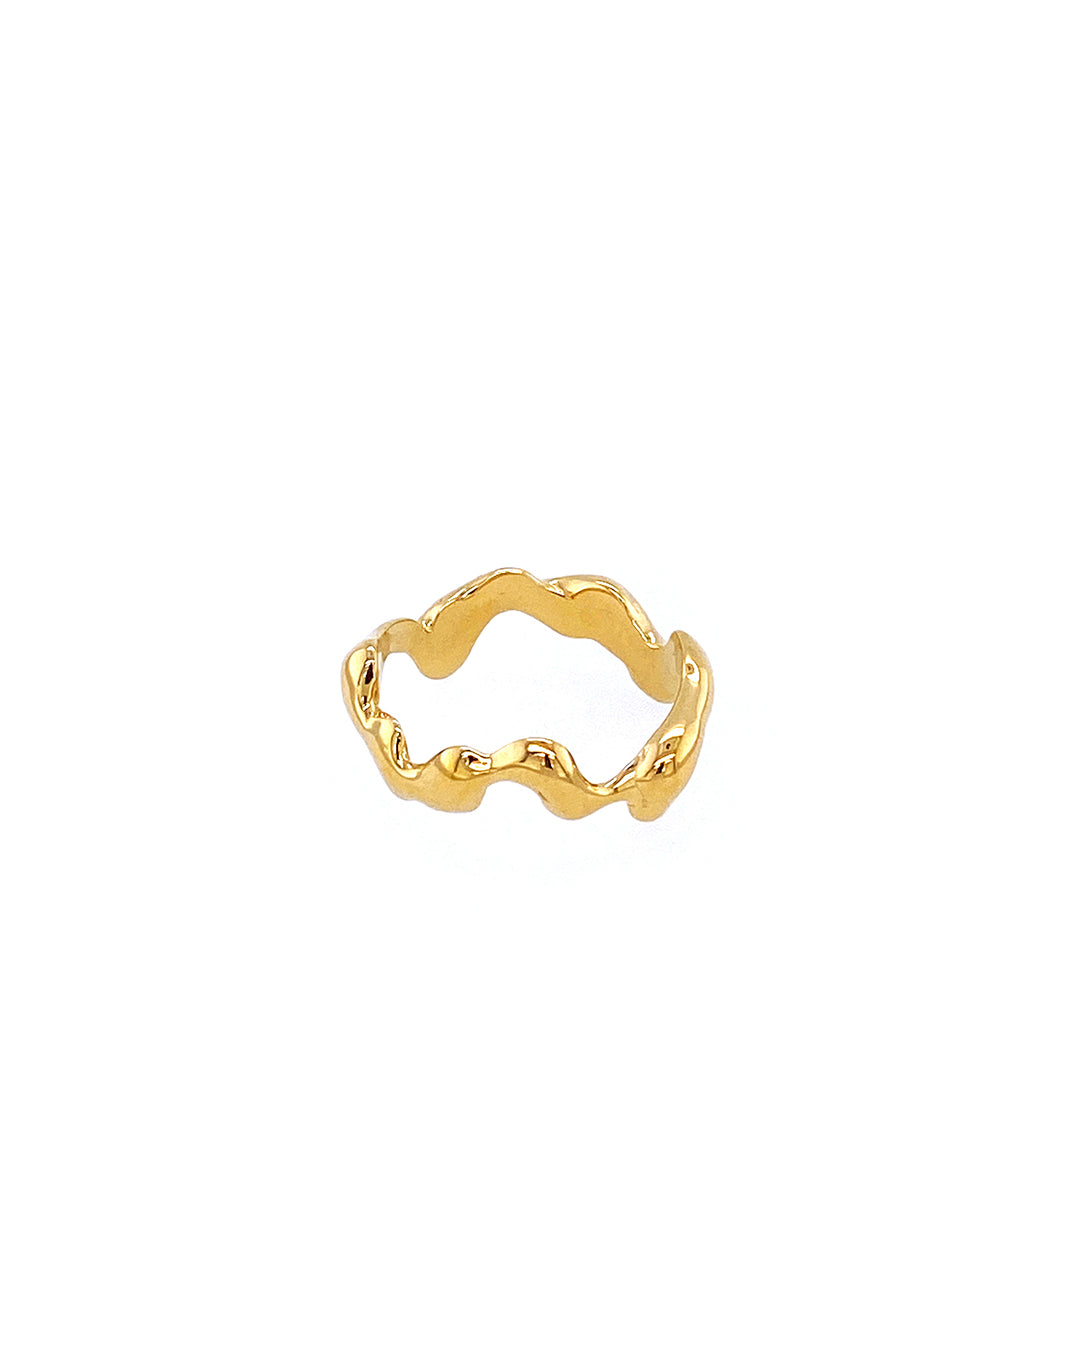 IDAMARI Himmin Ring in Gold available at Lahn.shop